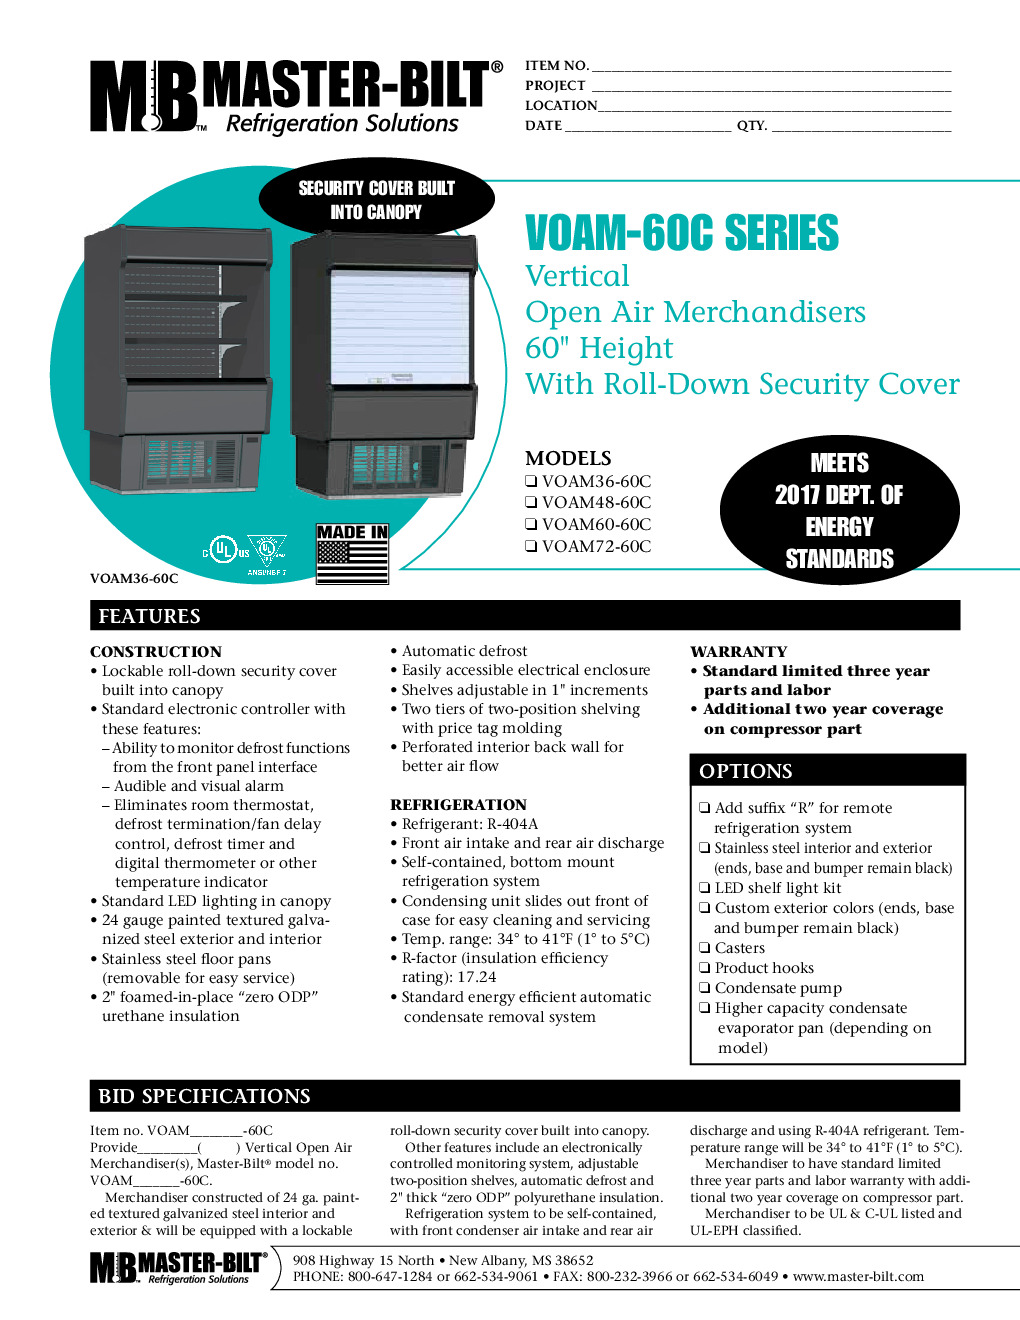 Master-Bilt VOAM60-60C Open Refrigerated Display Merchandiser